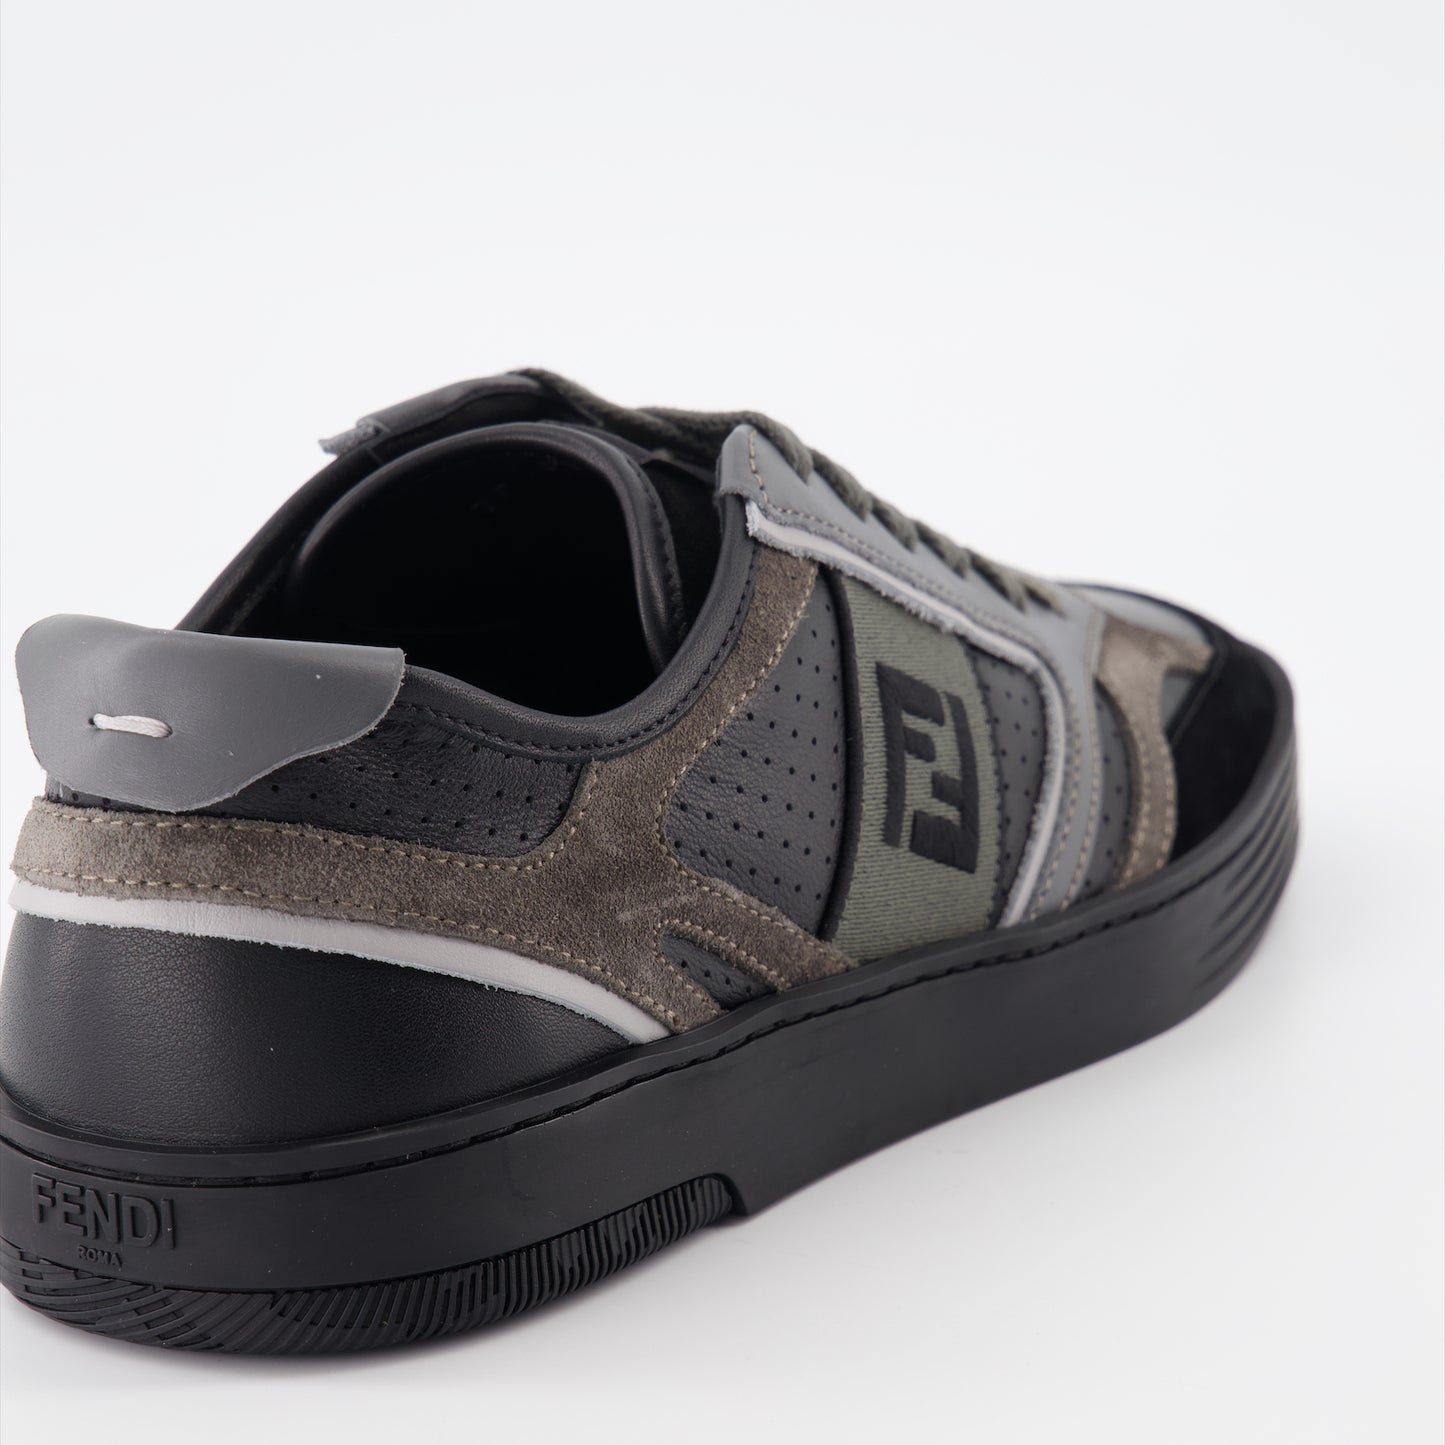 Fendi Step sneakers